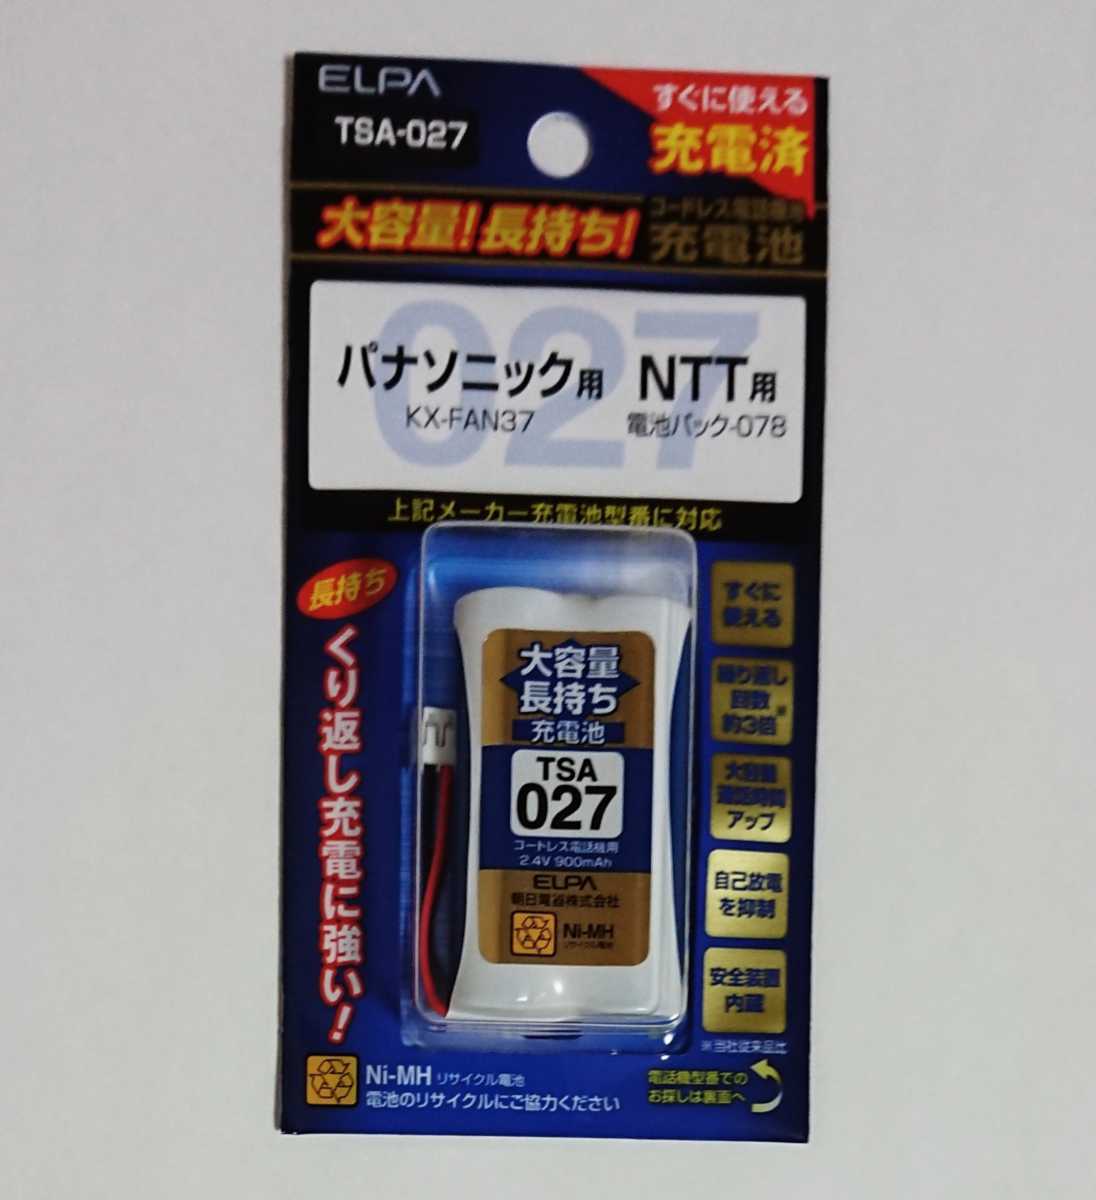 [ не использовался товар ] перезаряжаемая батарея / беспроводной телефонный аппарат беспроводная телефонная трубка для аккумулятор NTT Panasonic ELPA Elpa NTT Panasonic большая вместимость перезаряжаемая батарея 2.4V 9OOmAh TSA-027